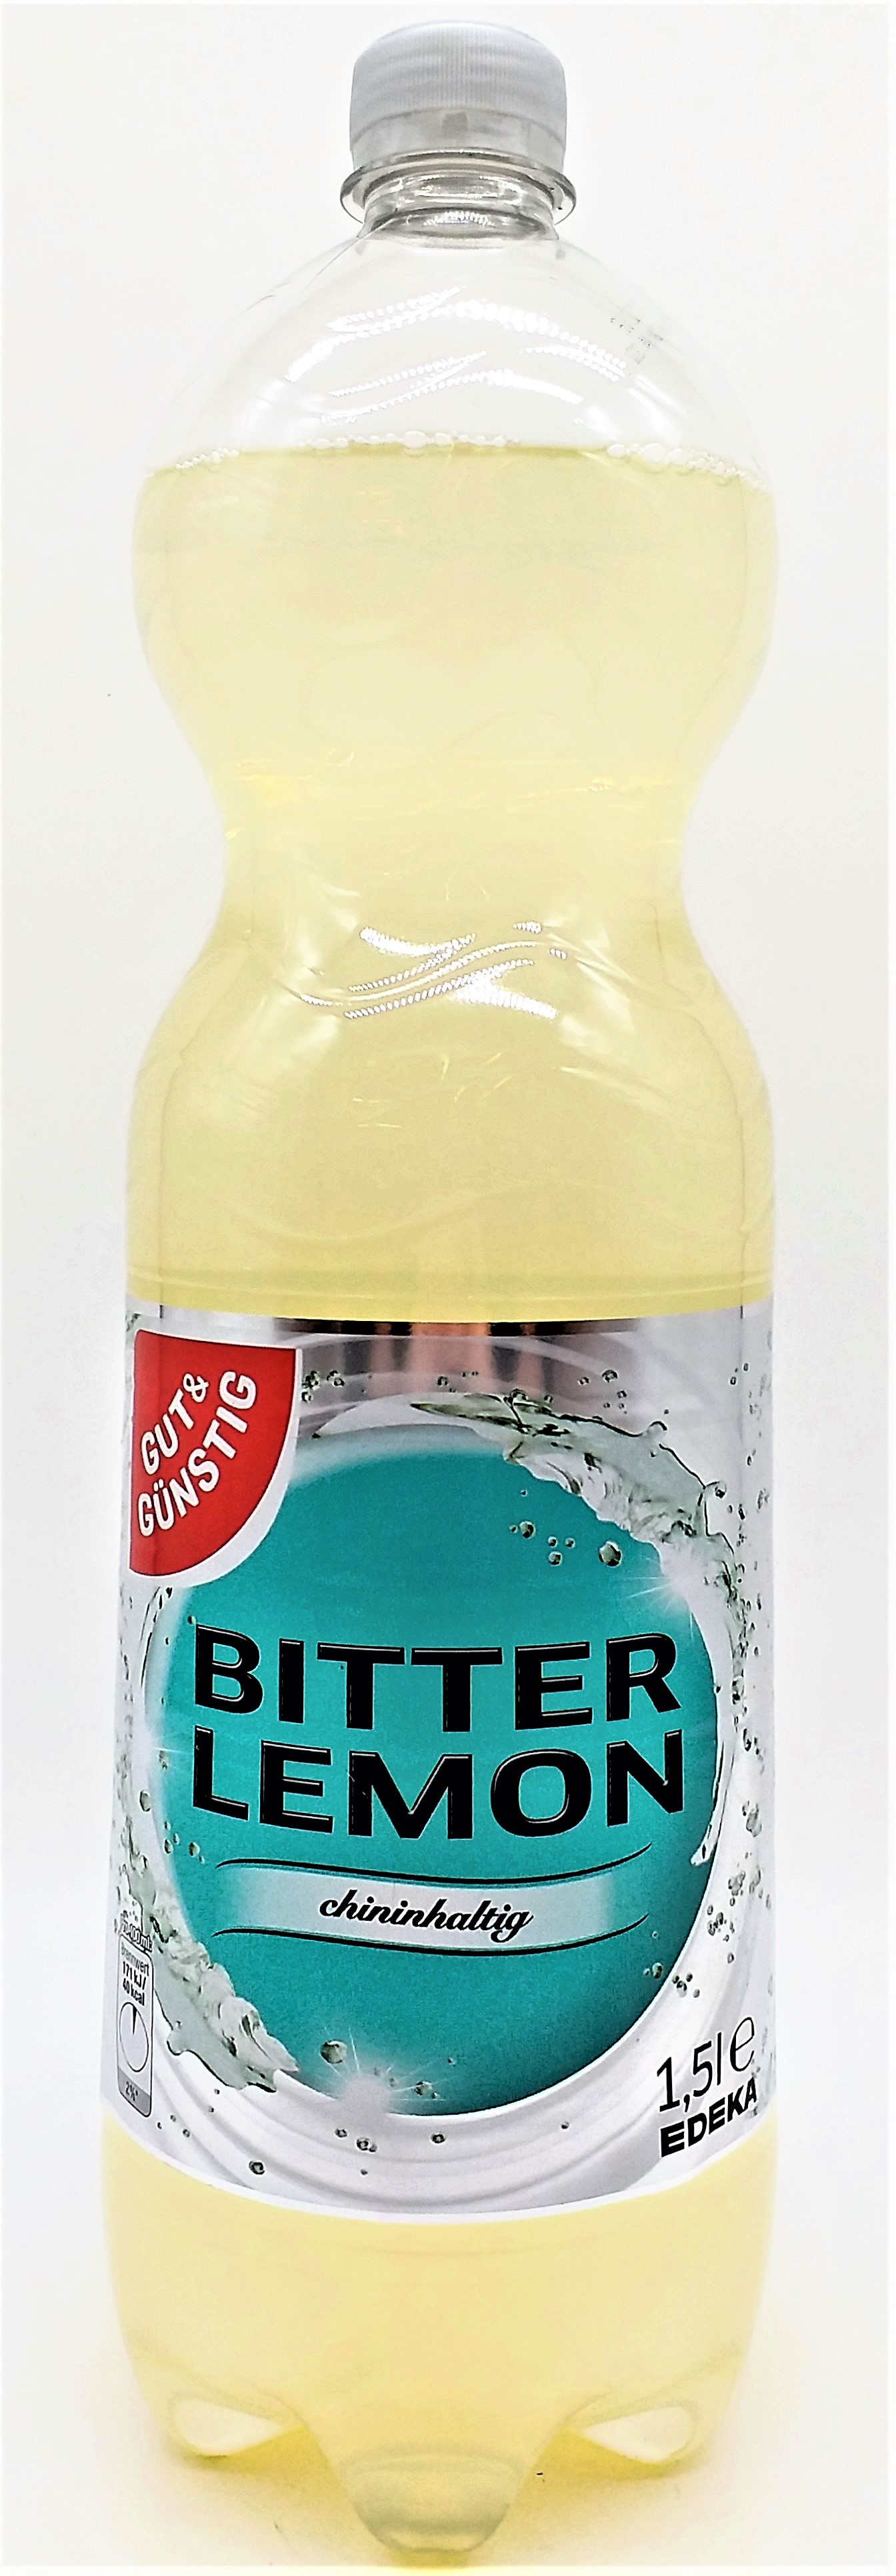 G&G Bitter Lemon 1,5l 6er